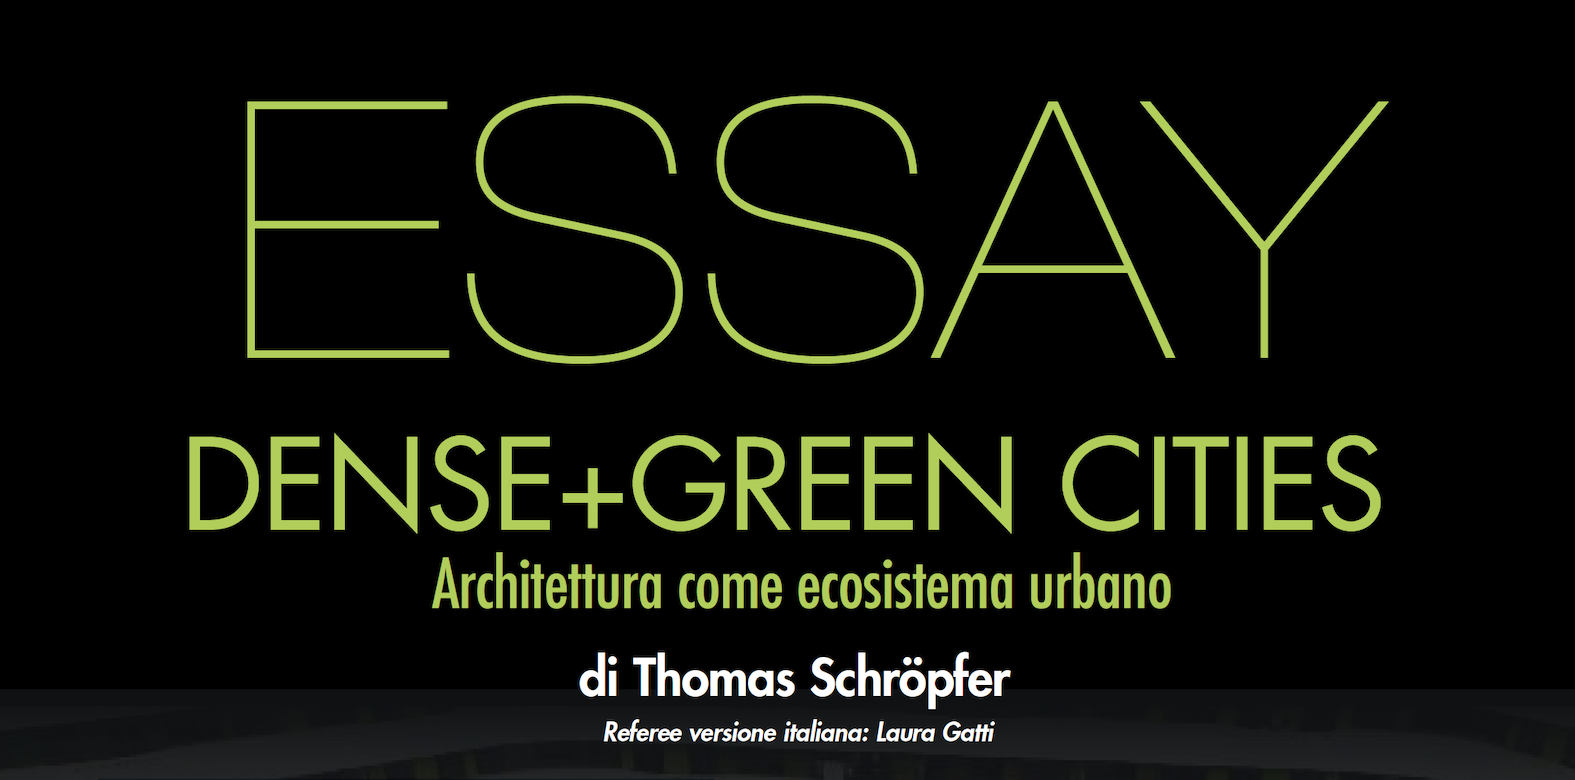 Dense+Green cities